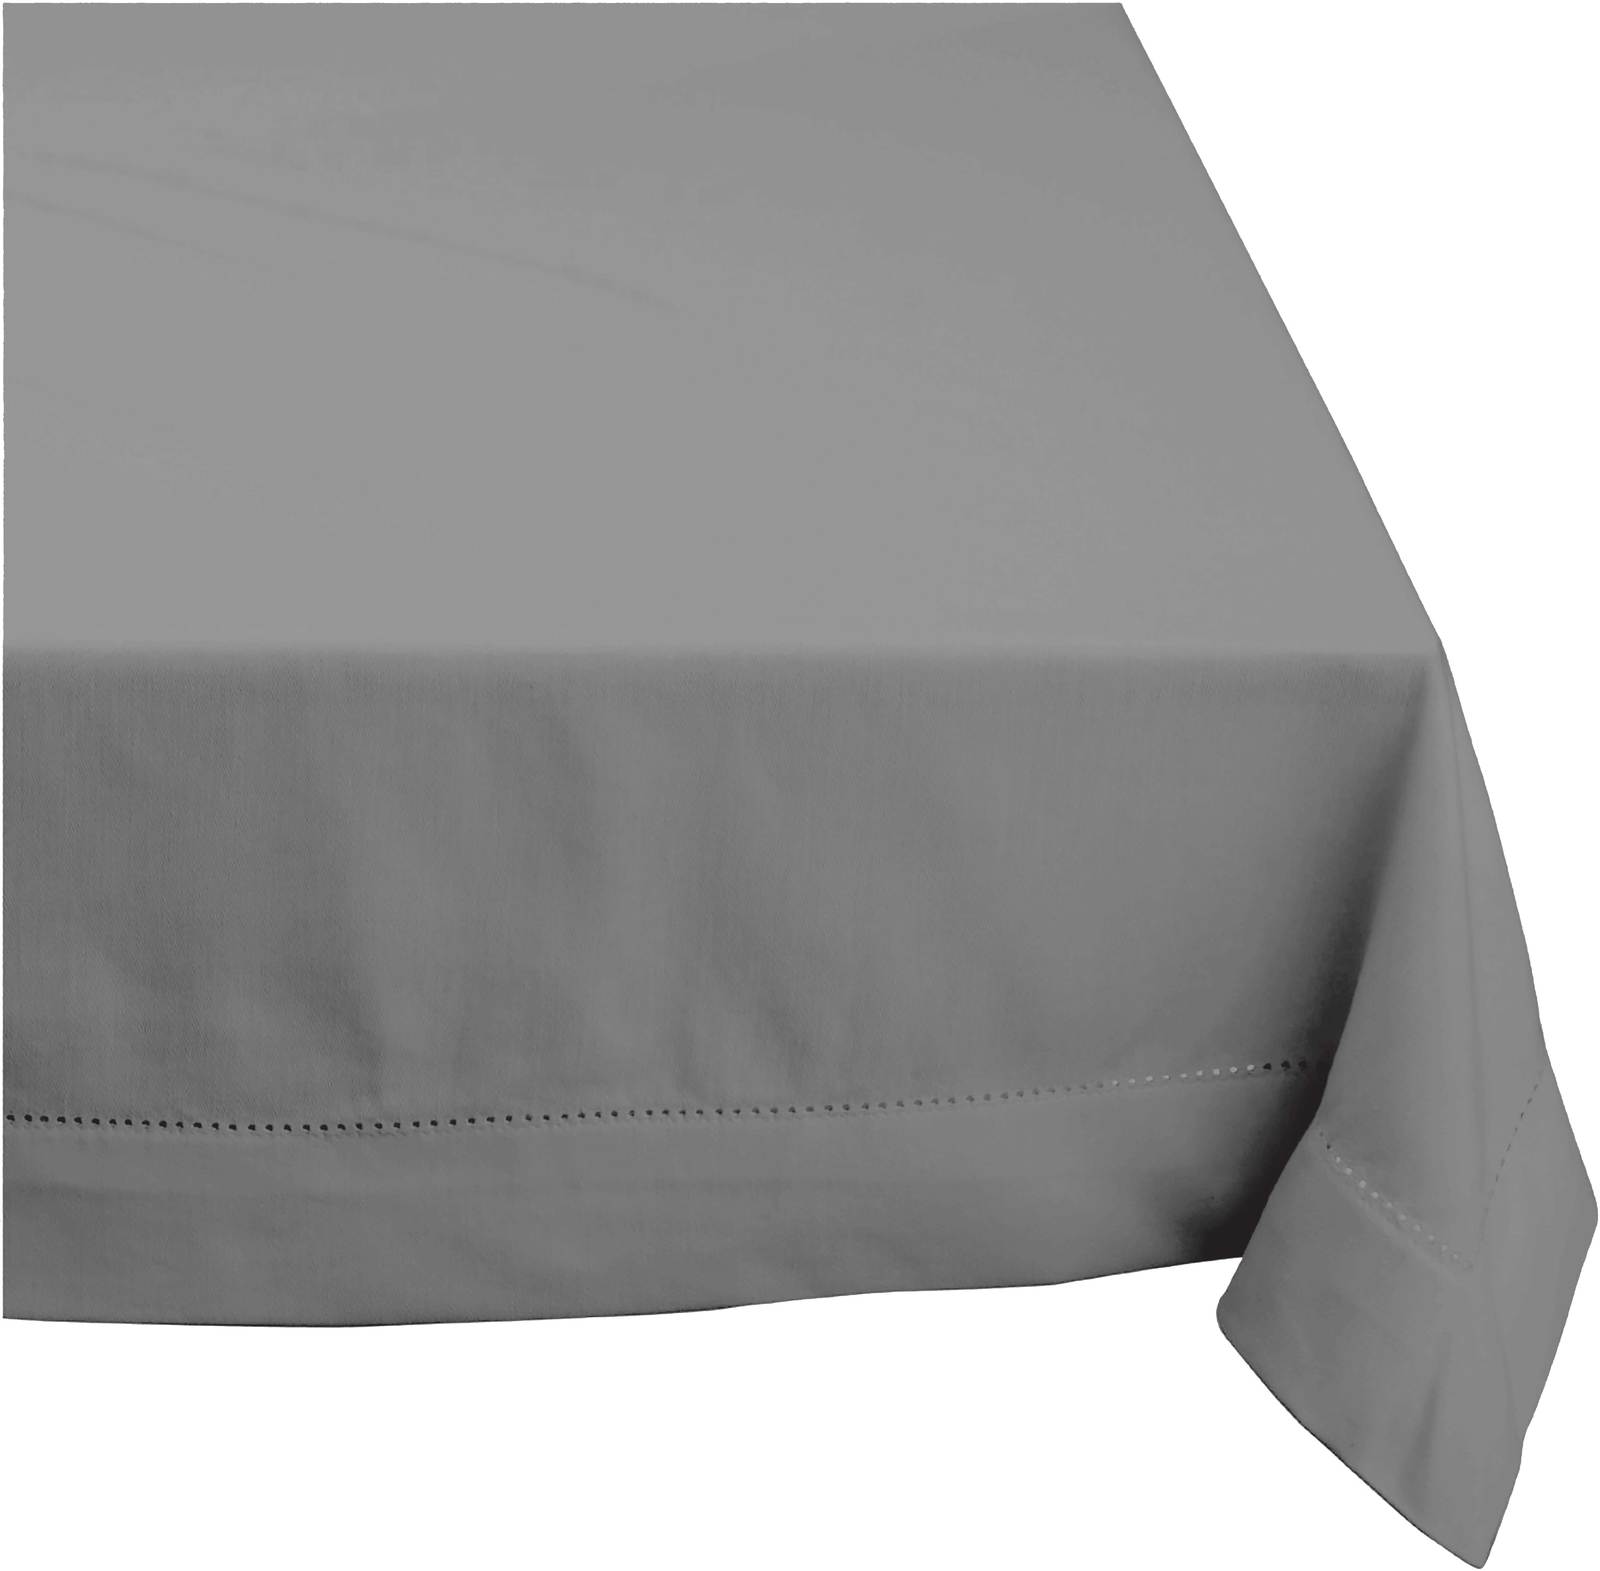 Elegant Hemstitch Tablecloth - 100% Cotton 130cm x 360cm in Grey